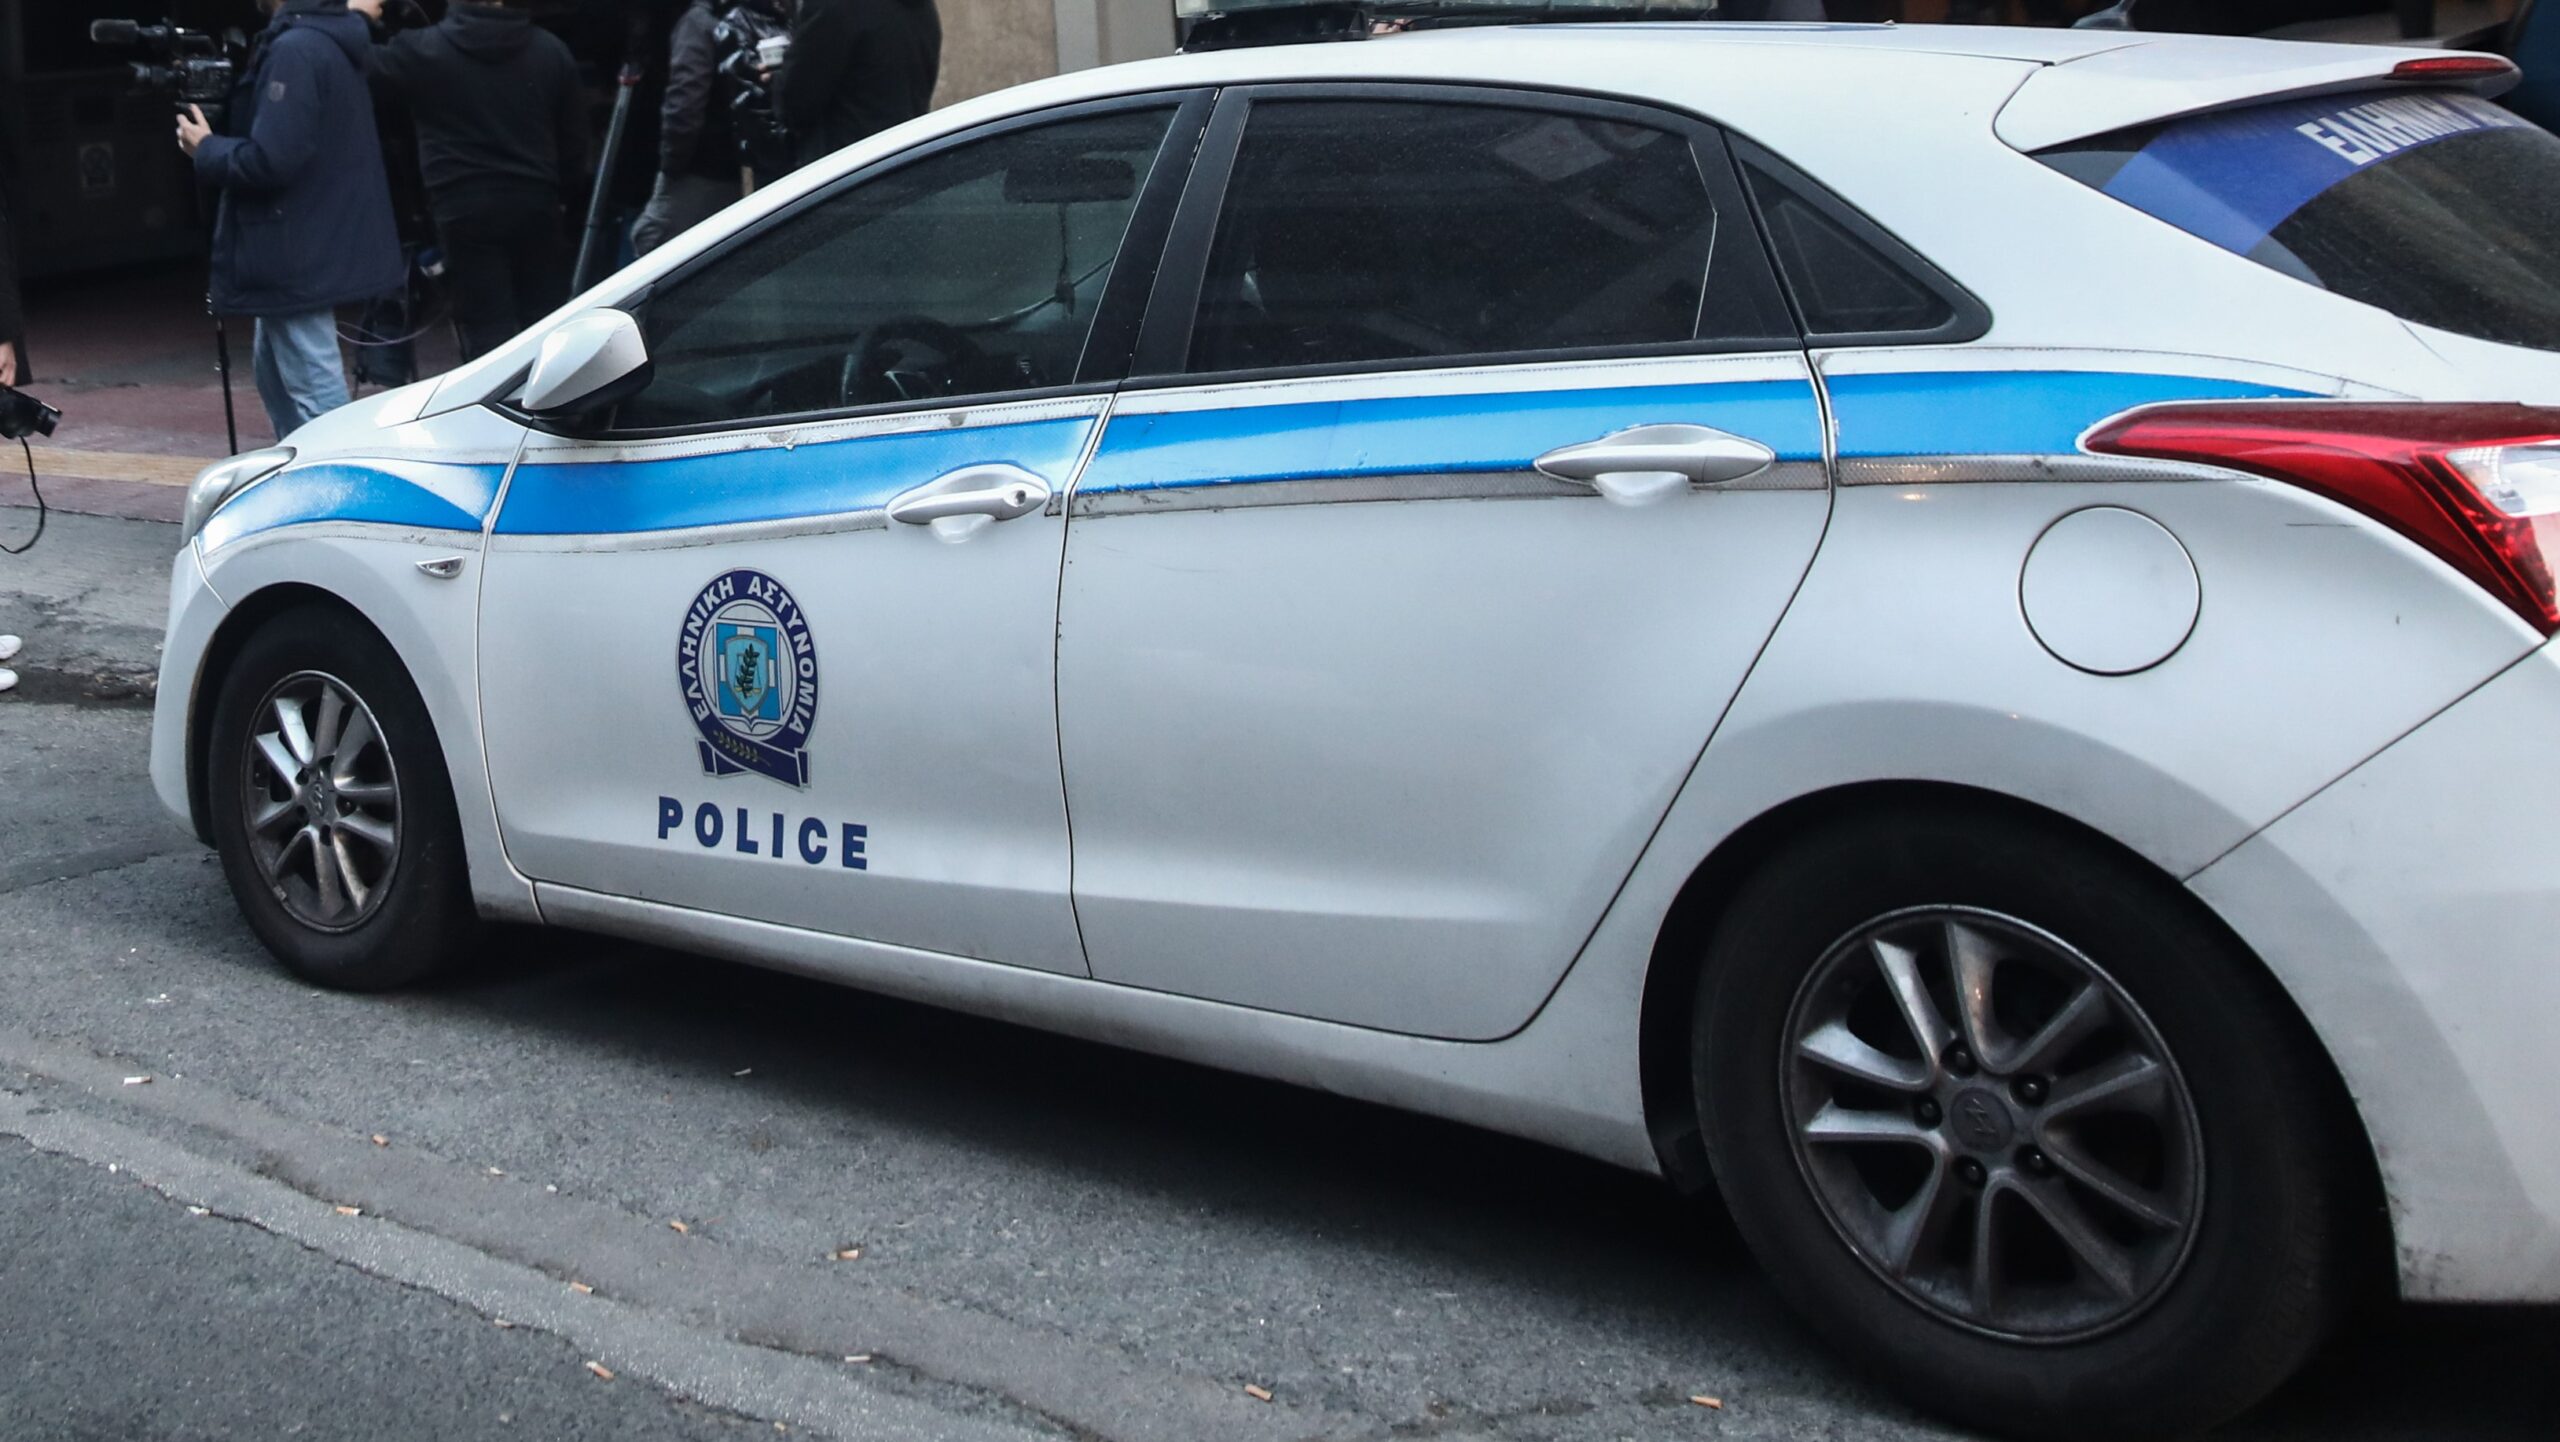 Θεσσαλονίκη: Σύλληψη δύο ατόμων έπειτα από κλοπή φορτηγού αυτοκινήτου